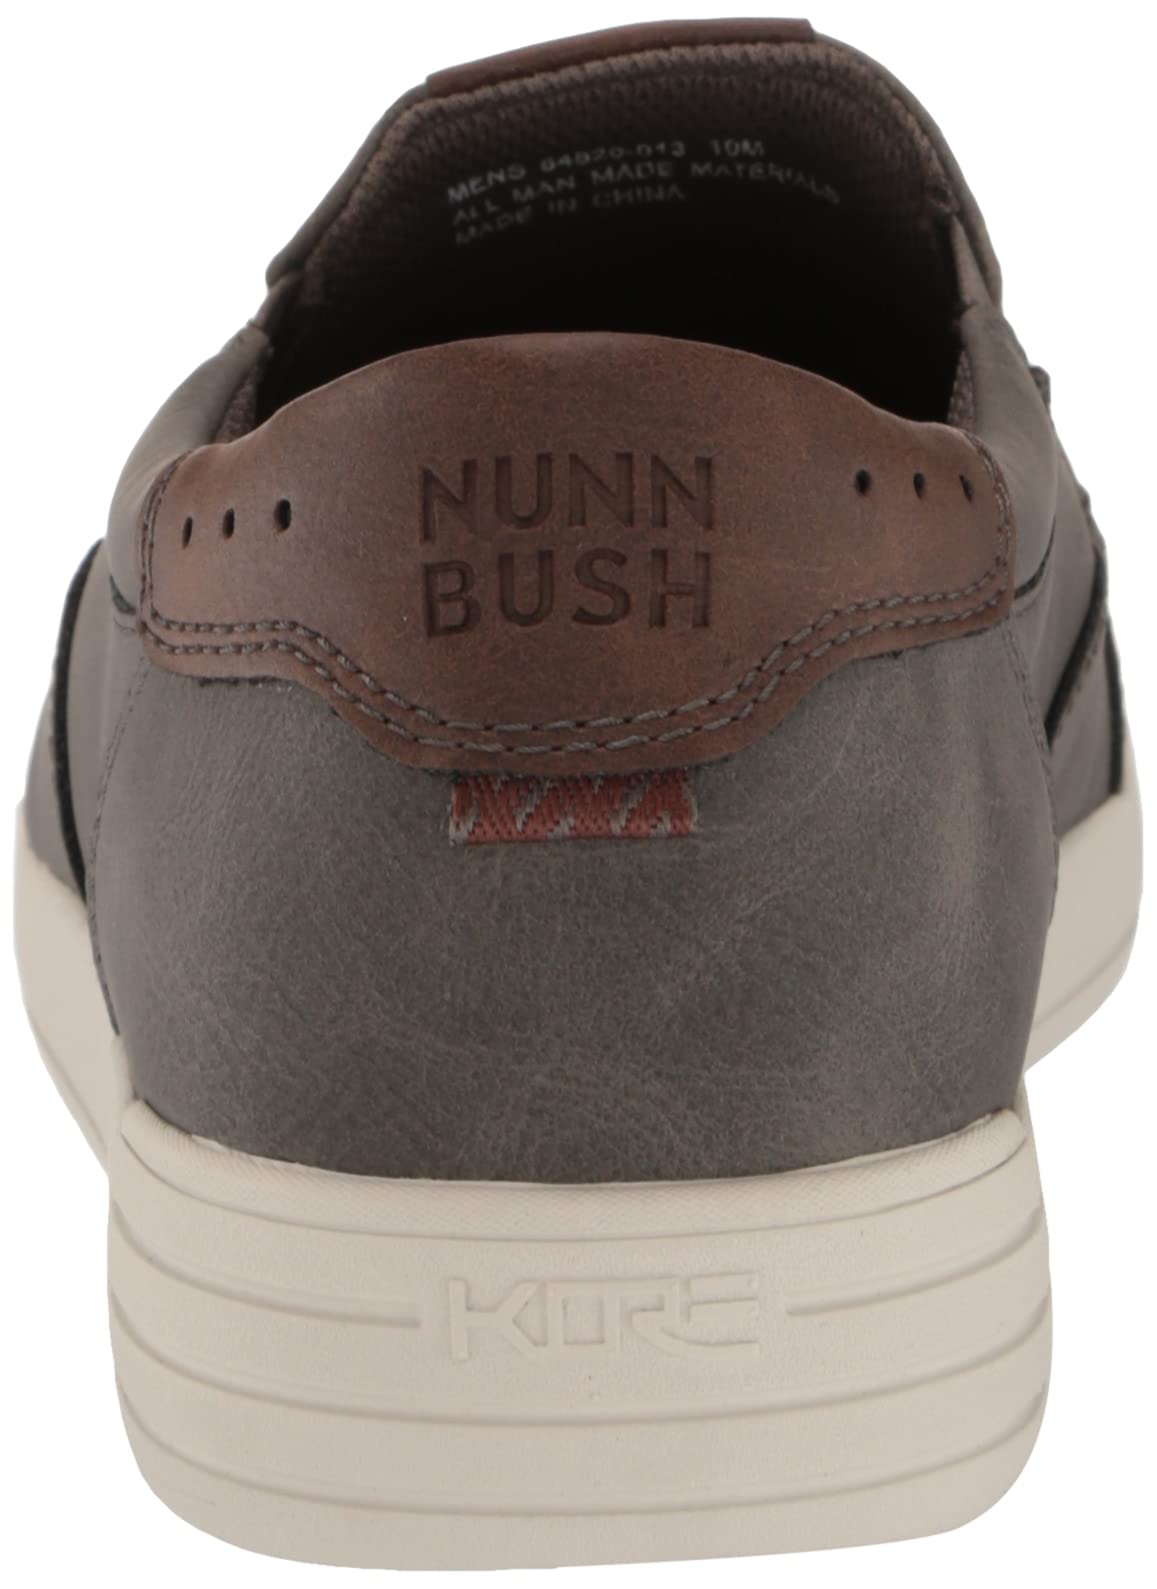 Nunn Bush Men's, Kore City Walk Slip-On Sneaker